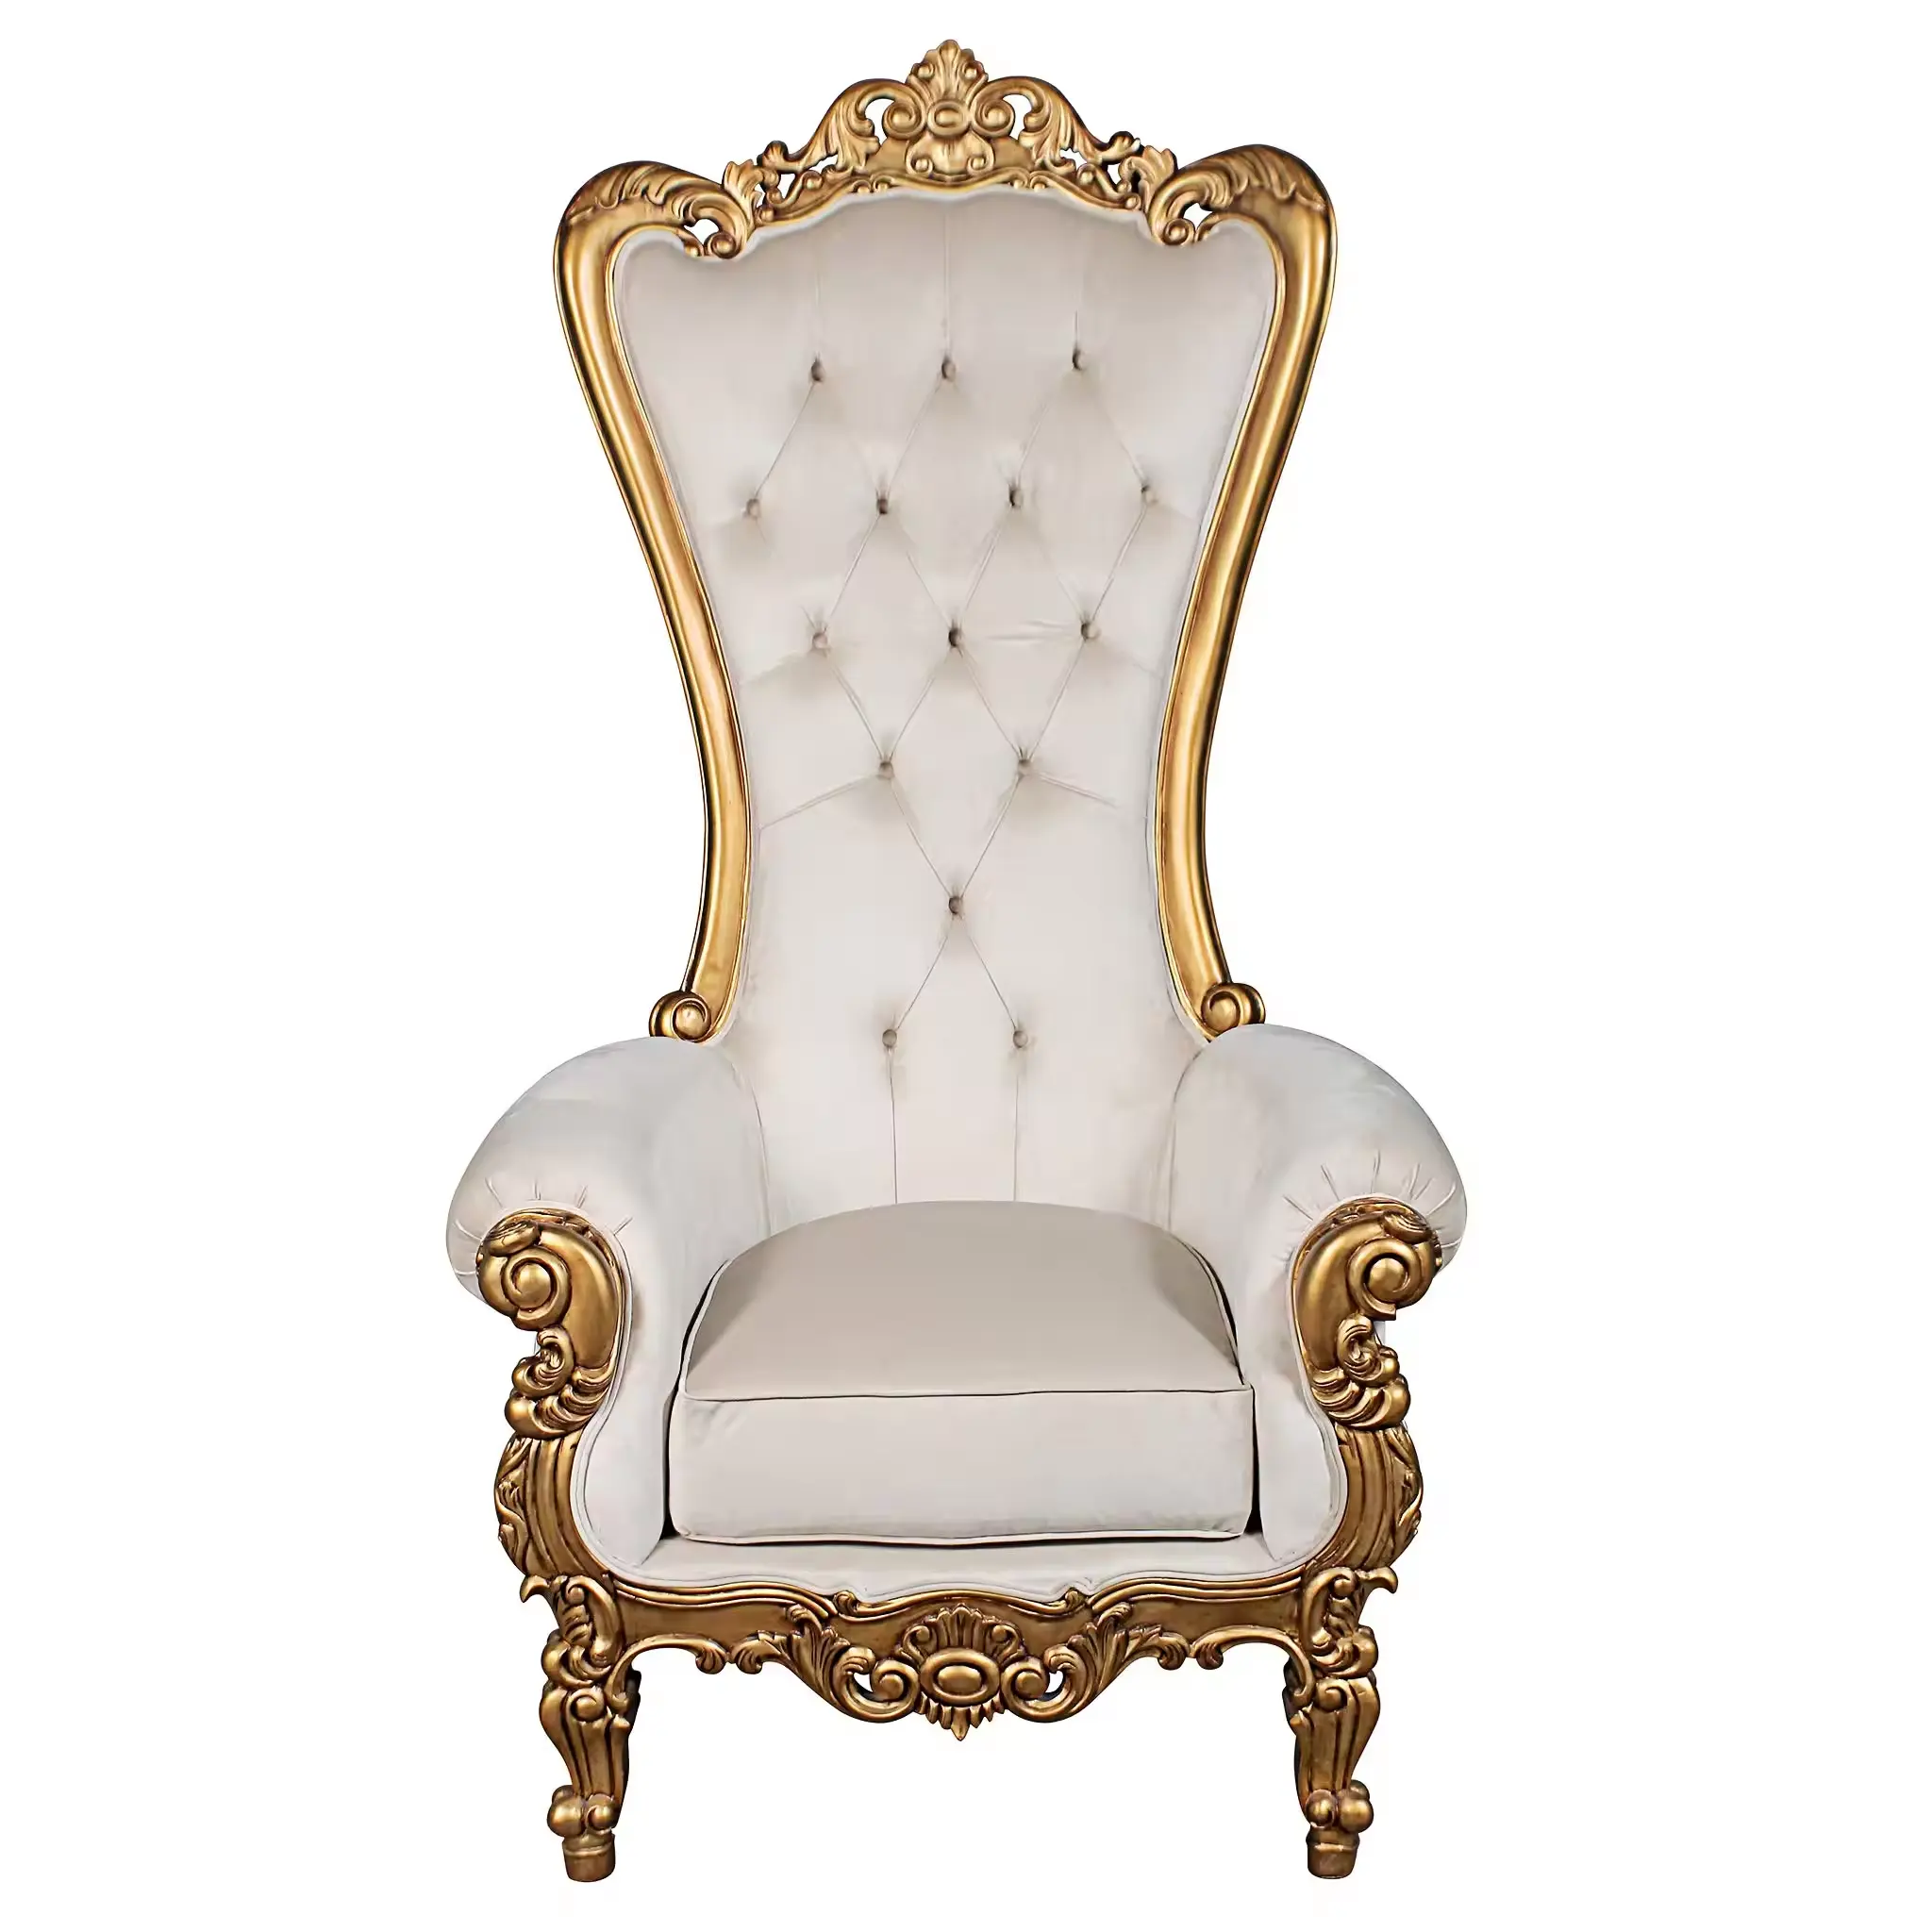 Ucuz fiyat lüks kral ve kraliçe taht sandalyeler altın yüksek geri kraliyet düğün etkinlik sandalyeleri damat ve gelin için